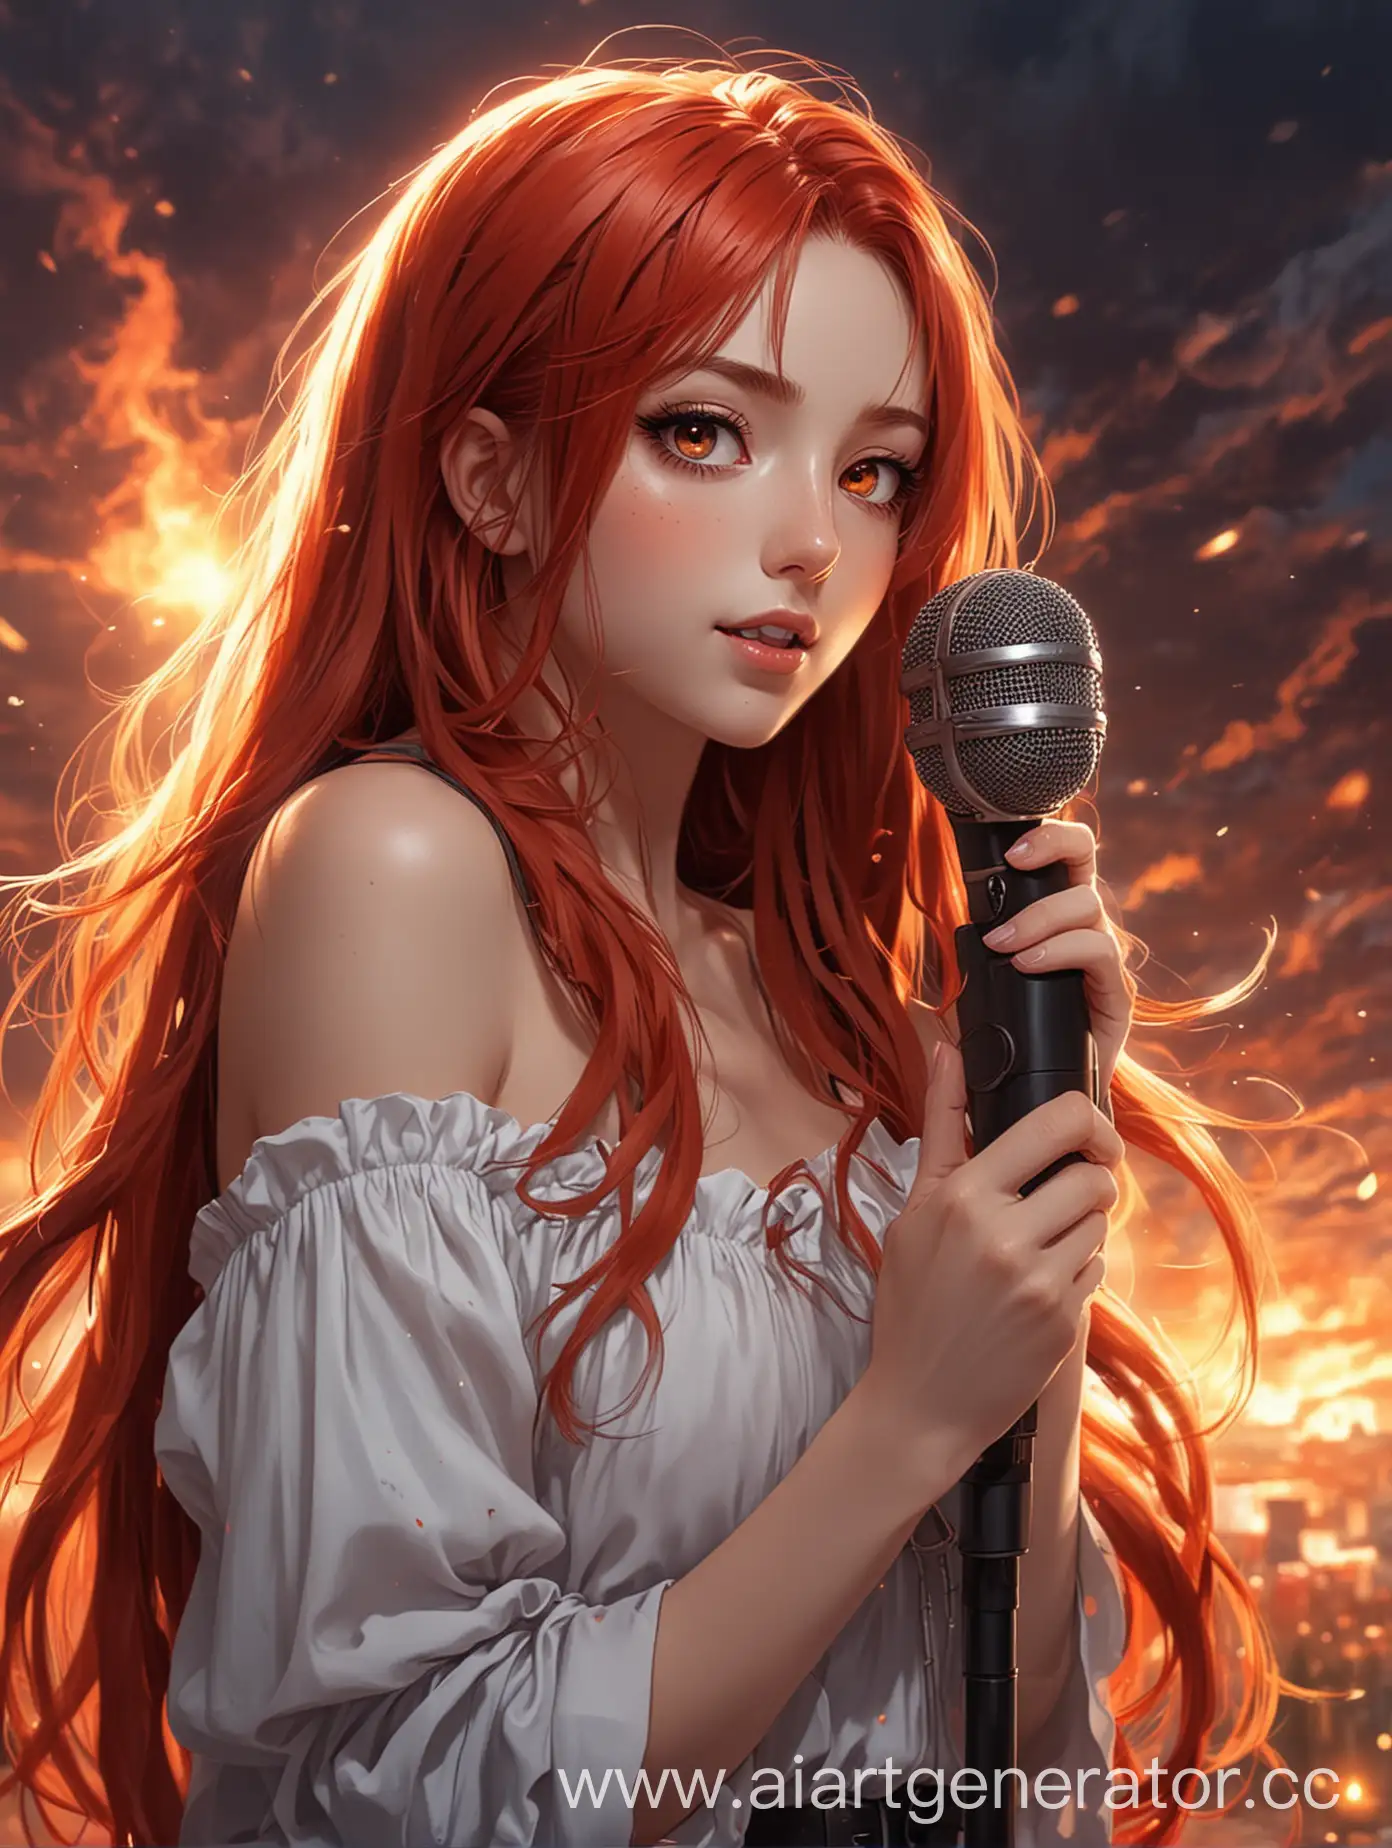 Аниме девочка с микрофоном в руках с длинными красными волосами и огненными глазами с красивым романтичным окружением